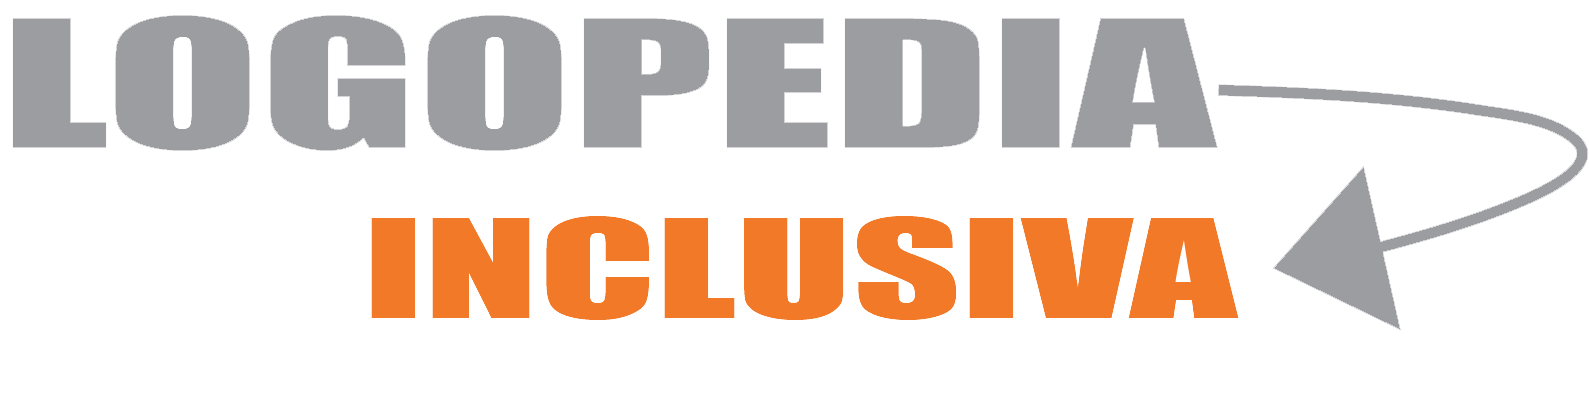 Logopedia Inclusiva